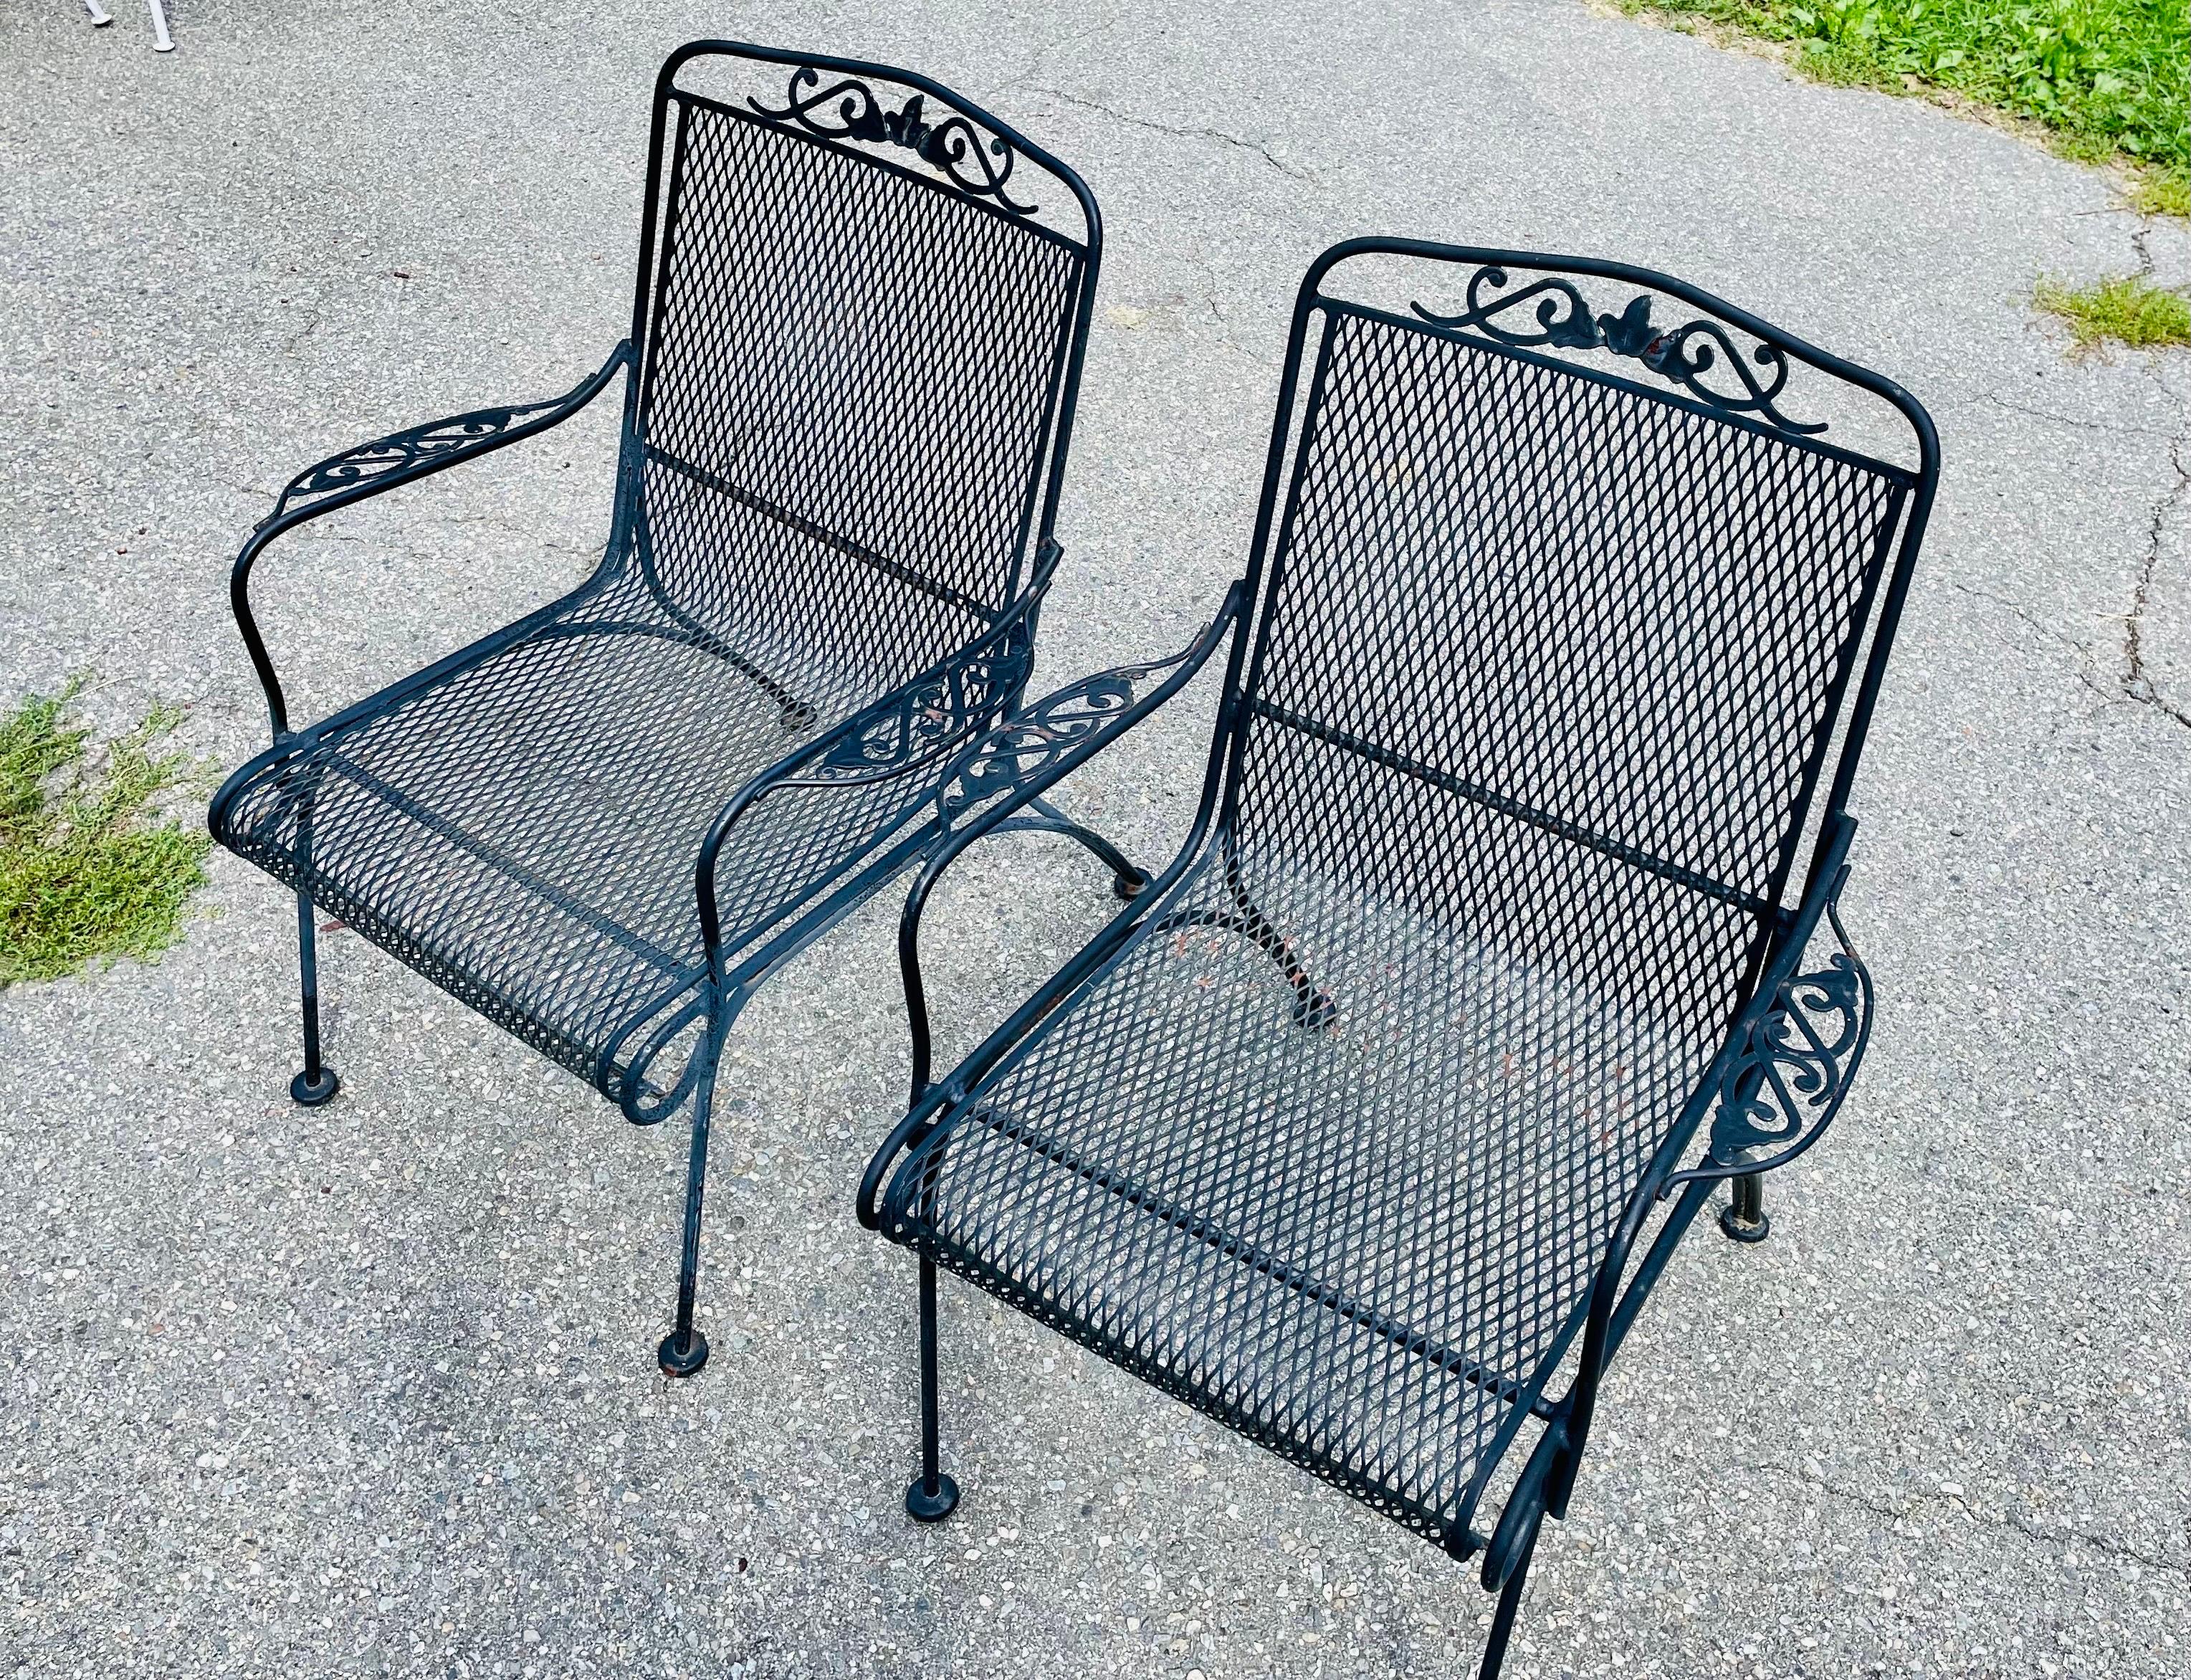 Ensemble de 4 chaises à manger en fer forgé vintage

Sablage et peinture en poudre gratuits, au choix, en blanc ou en noir. D'autres options de couleur sont disponibles. Faites votre choix parmi nos tissus performants pour des coussins rembourrés